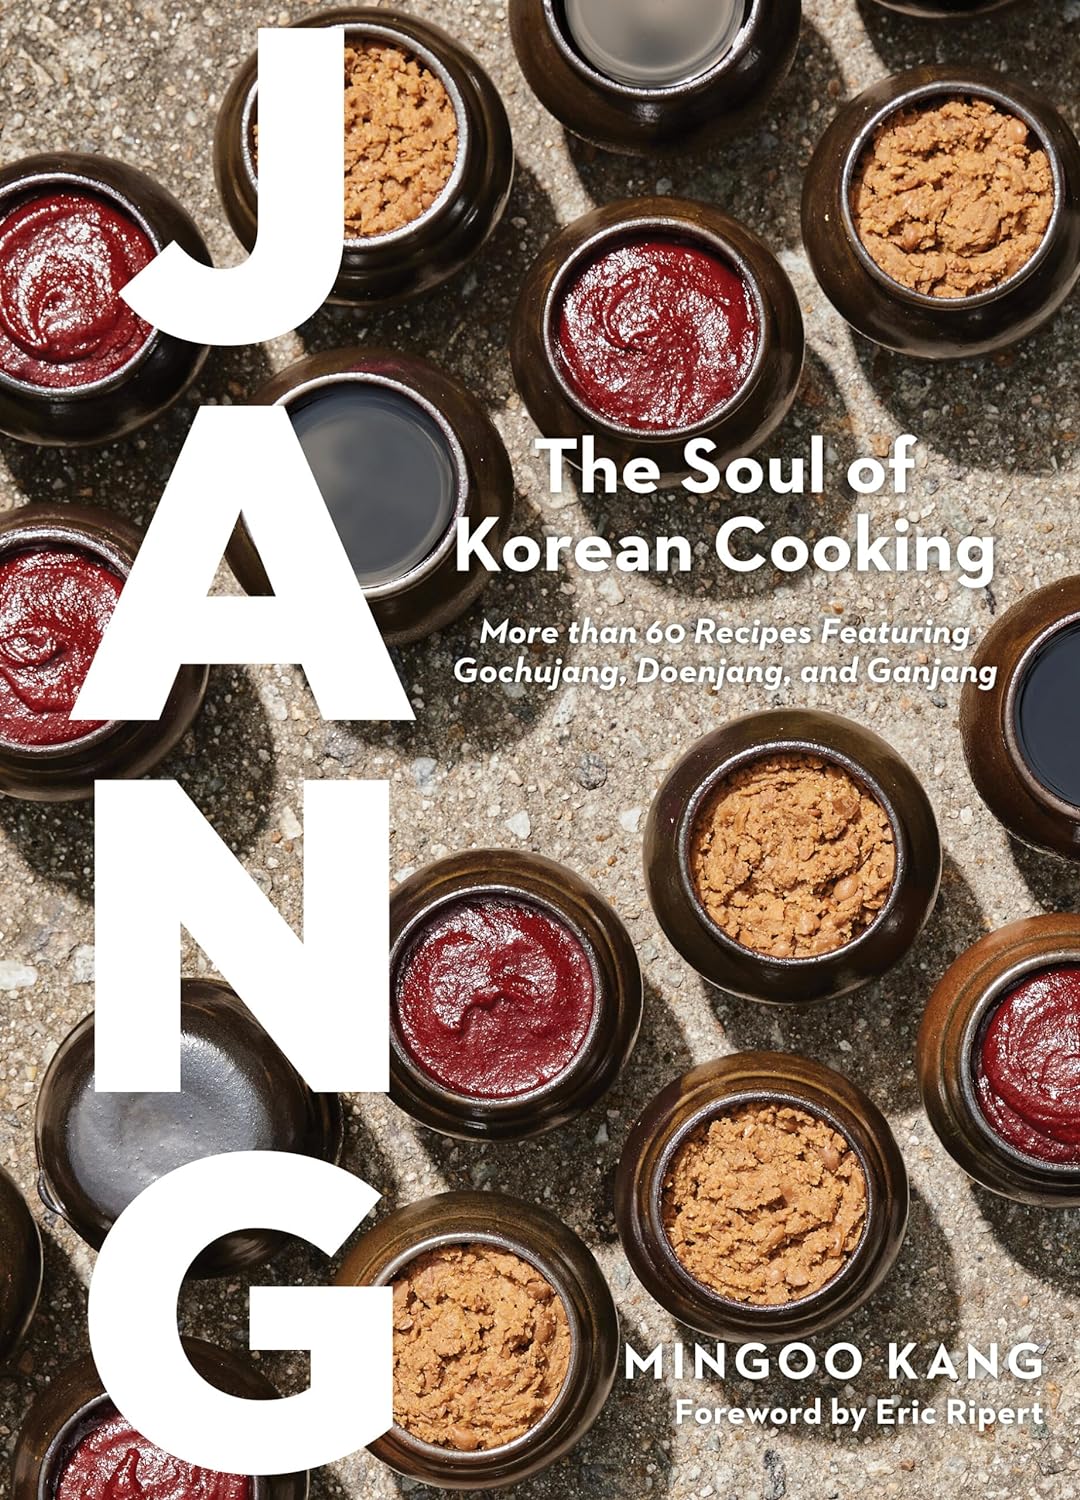 Jang: The Soul of Korean Cooking: More than 60 Recipes Featuring Gochujang, Doenjang, and Ganjang (Mingoo Kang)